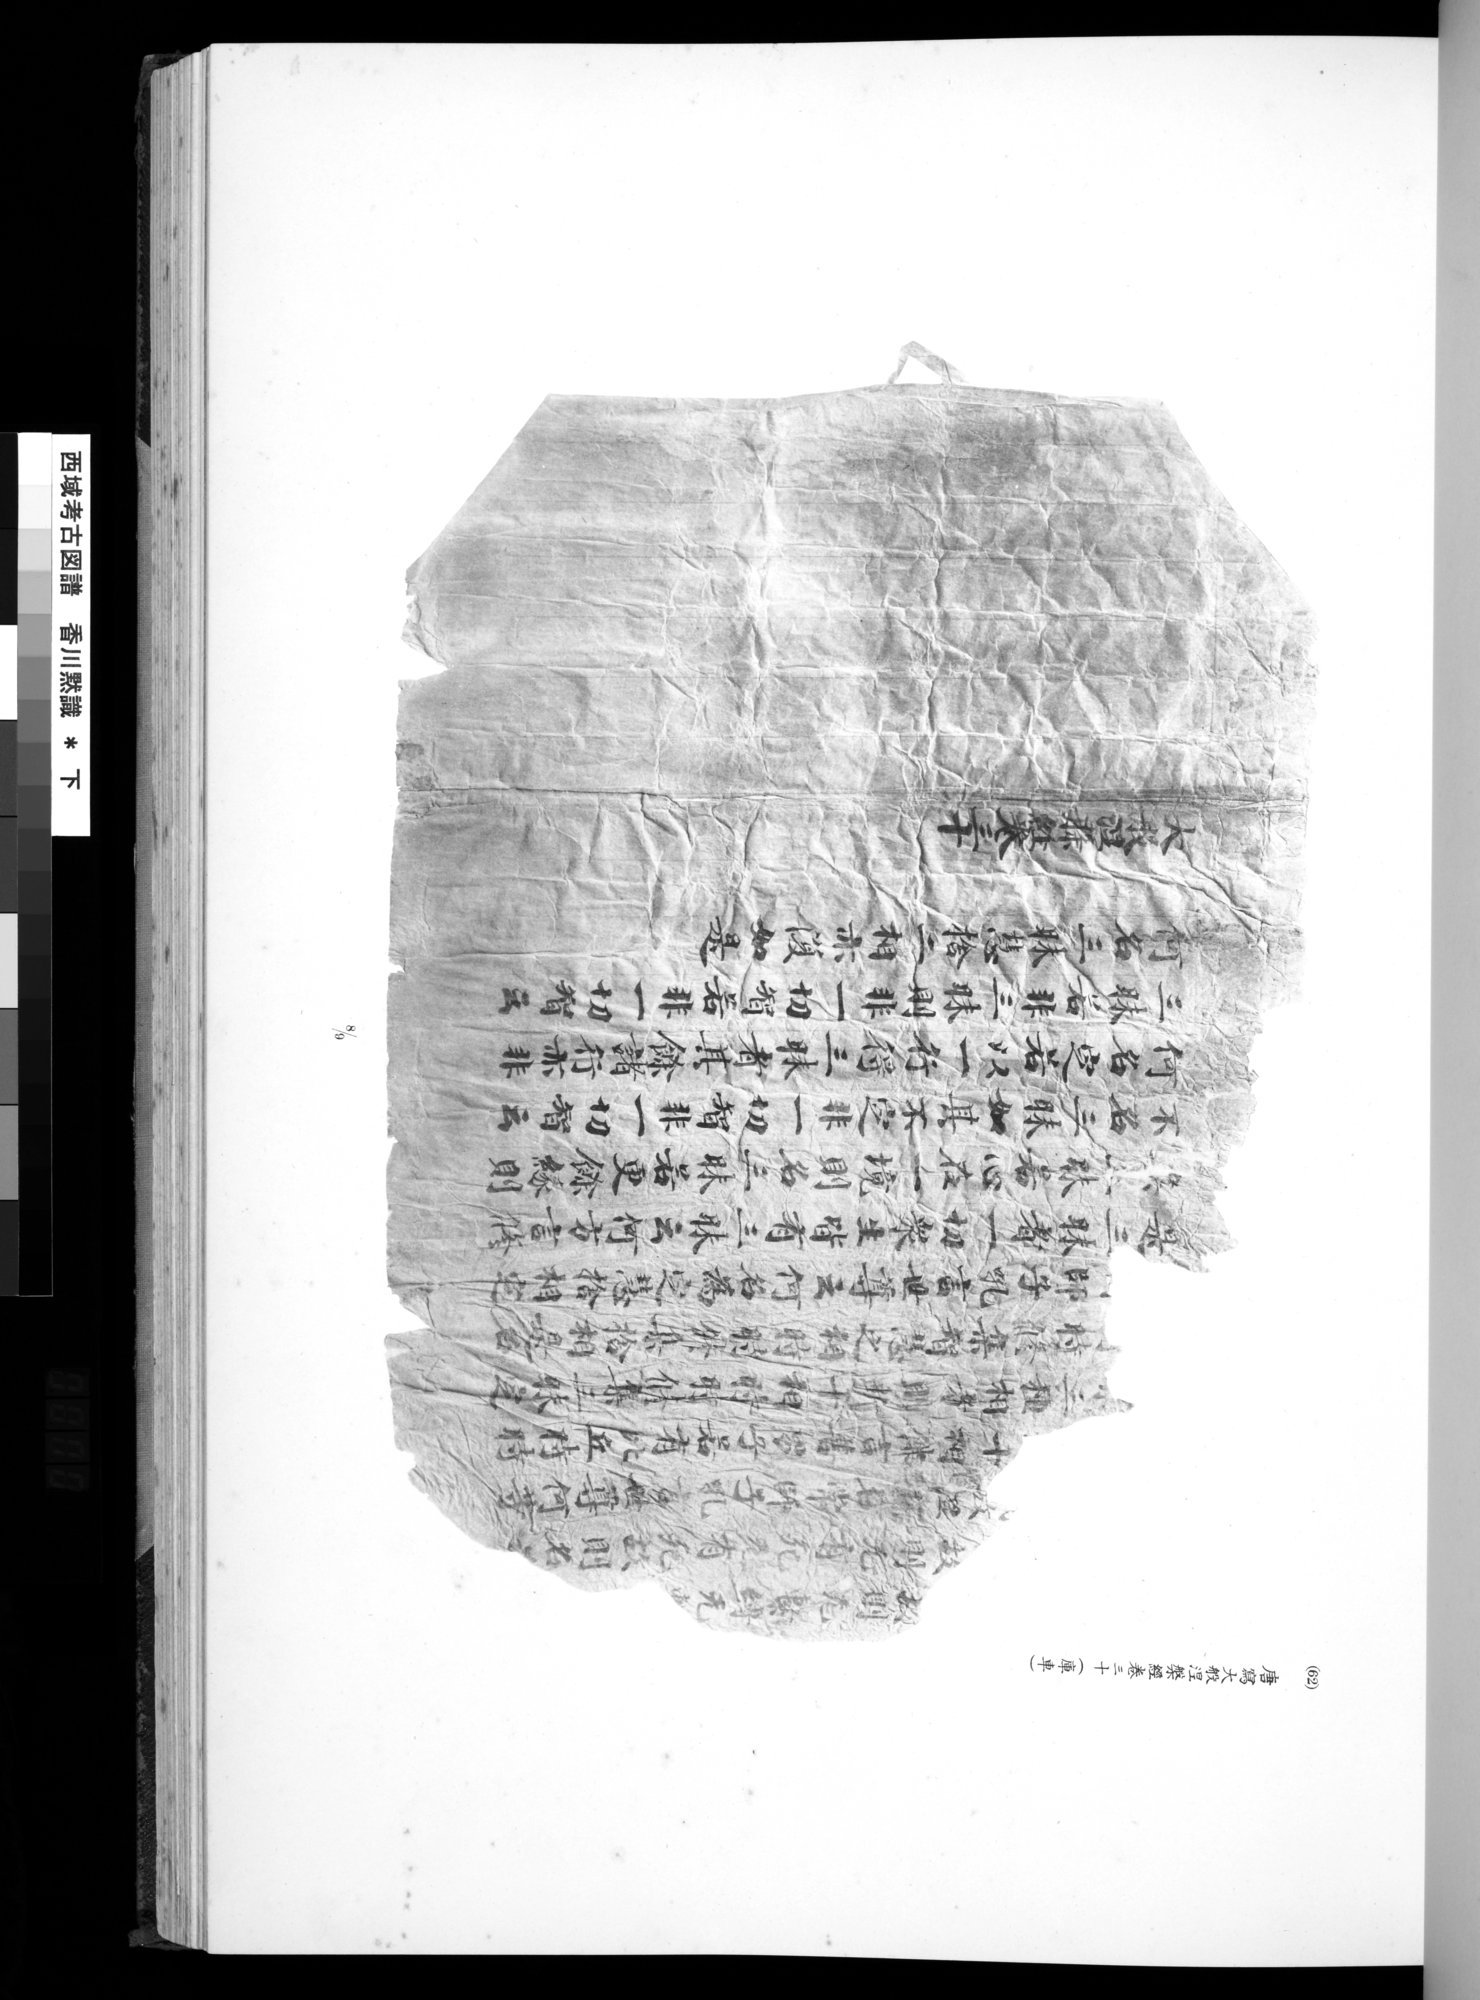 西域考古図譜 : vol.2 / Page 139 (Grayscale High Resolution Image)